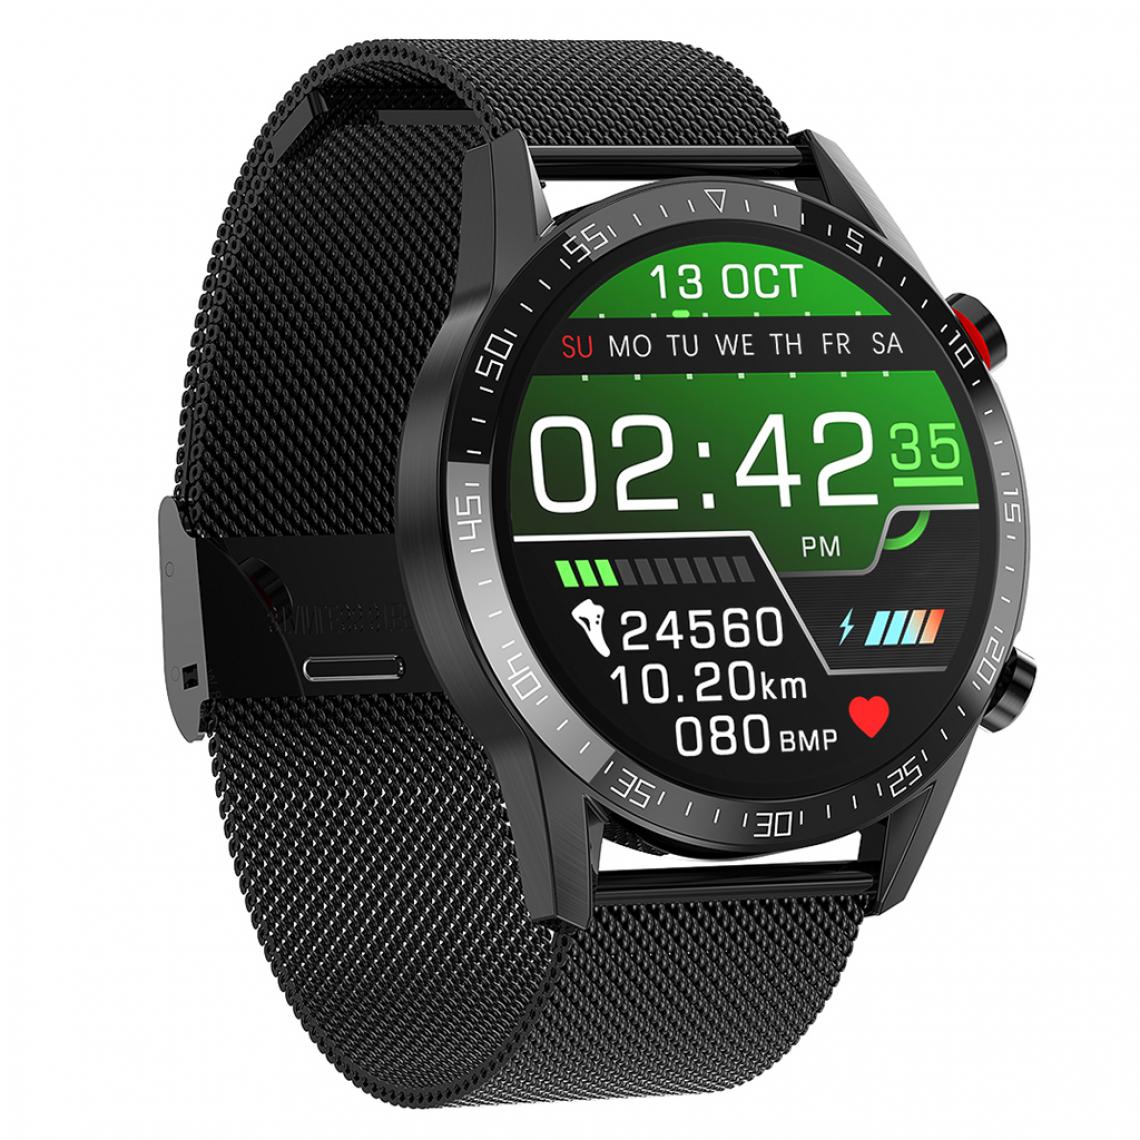 marque generique - L13 Smart Watch IP68 étanche ECG PPG Bluetooth Call Silver Steel - Montre connectée